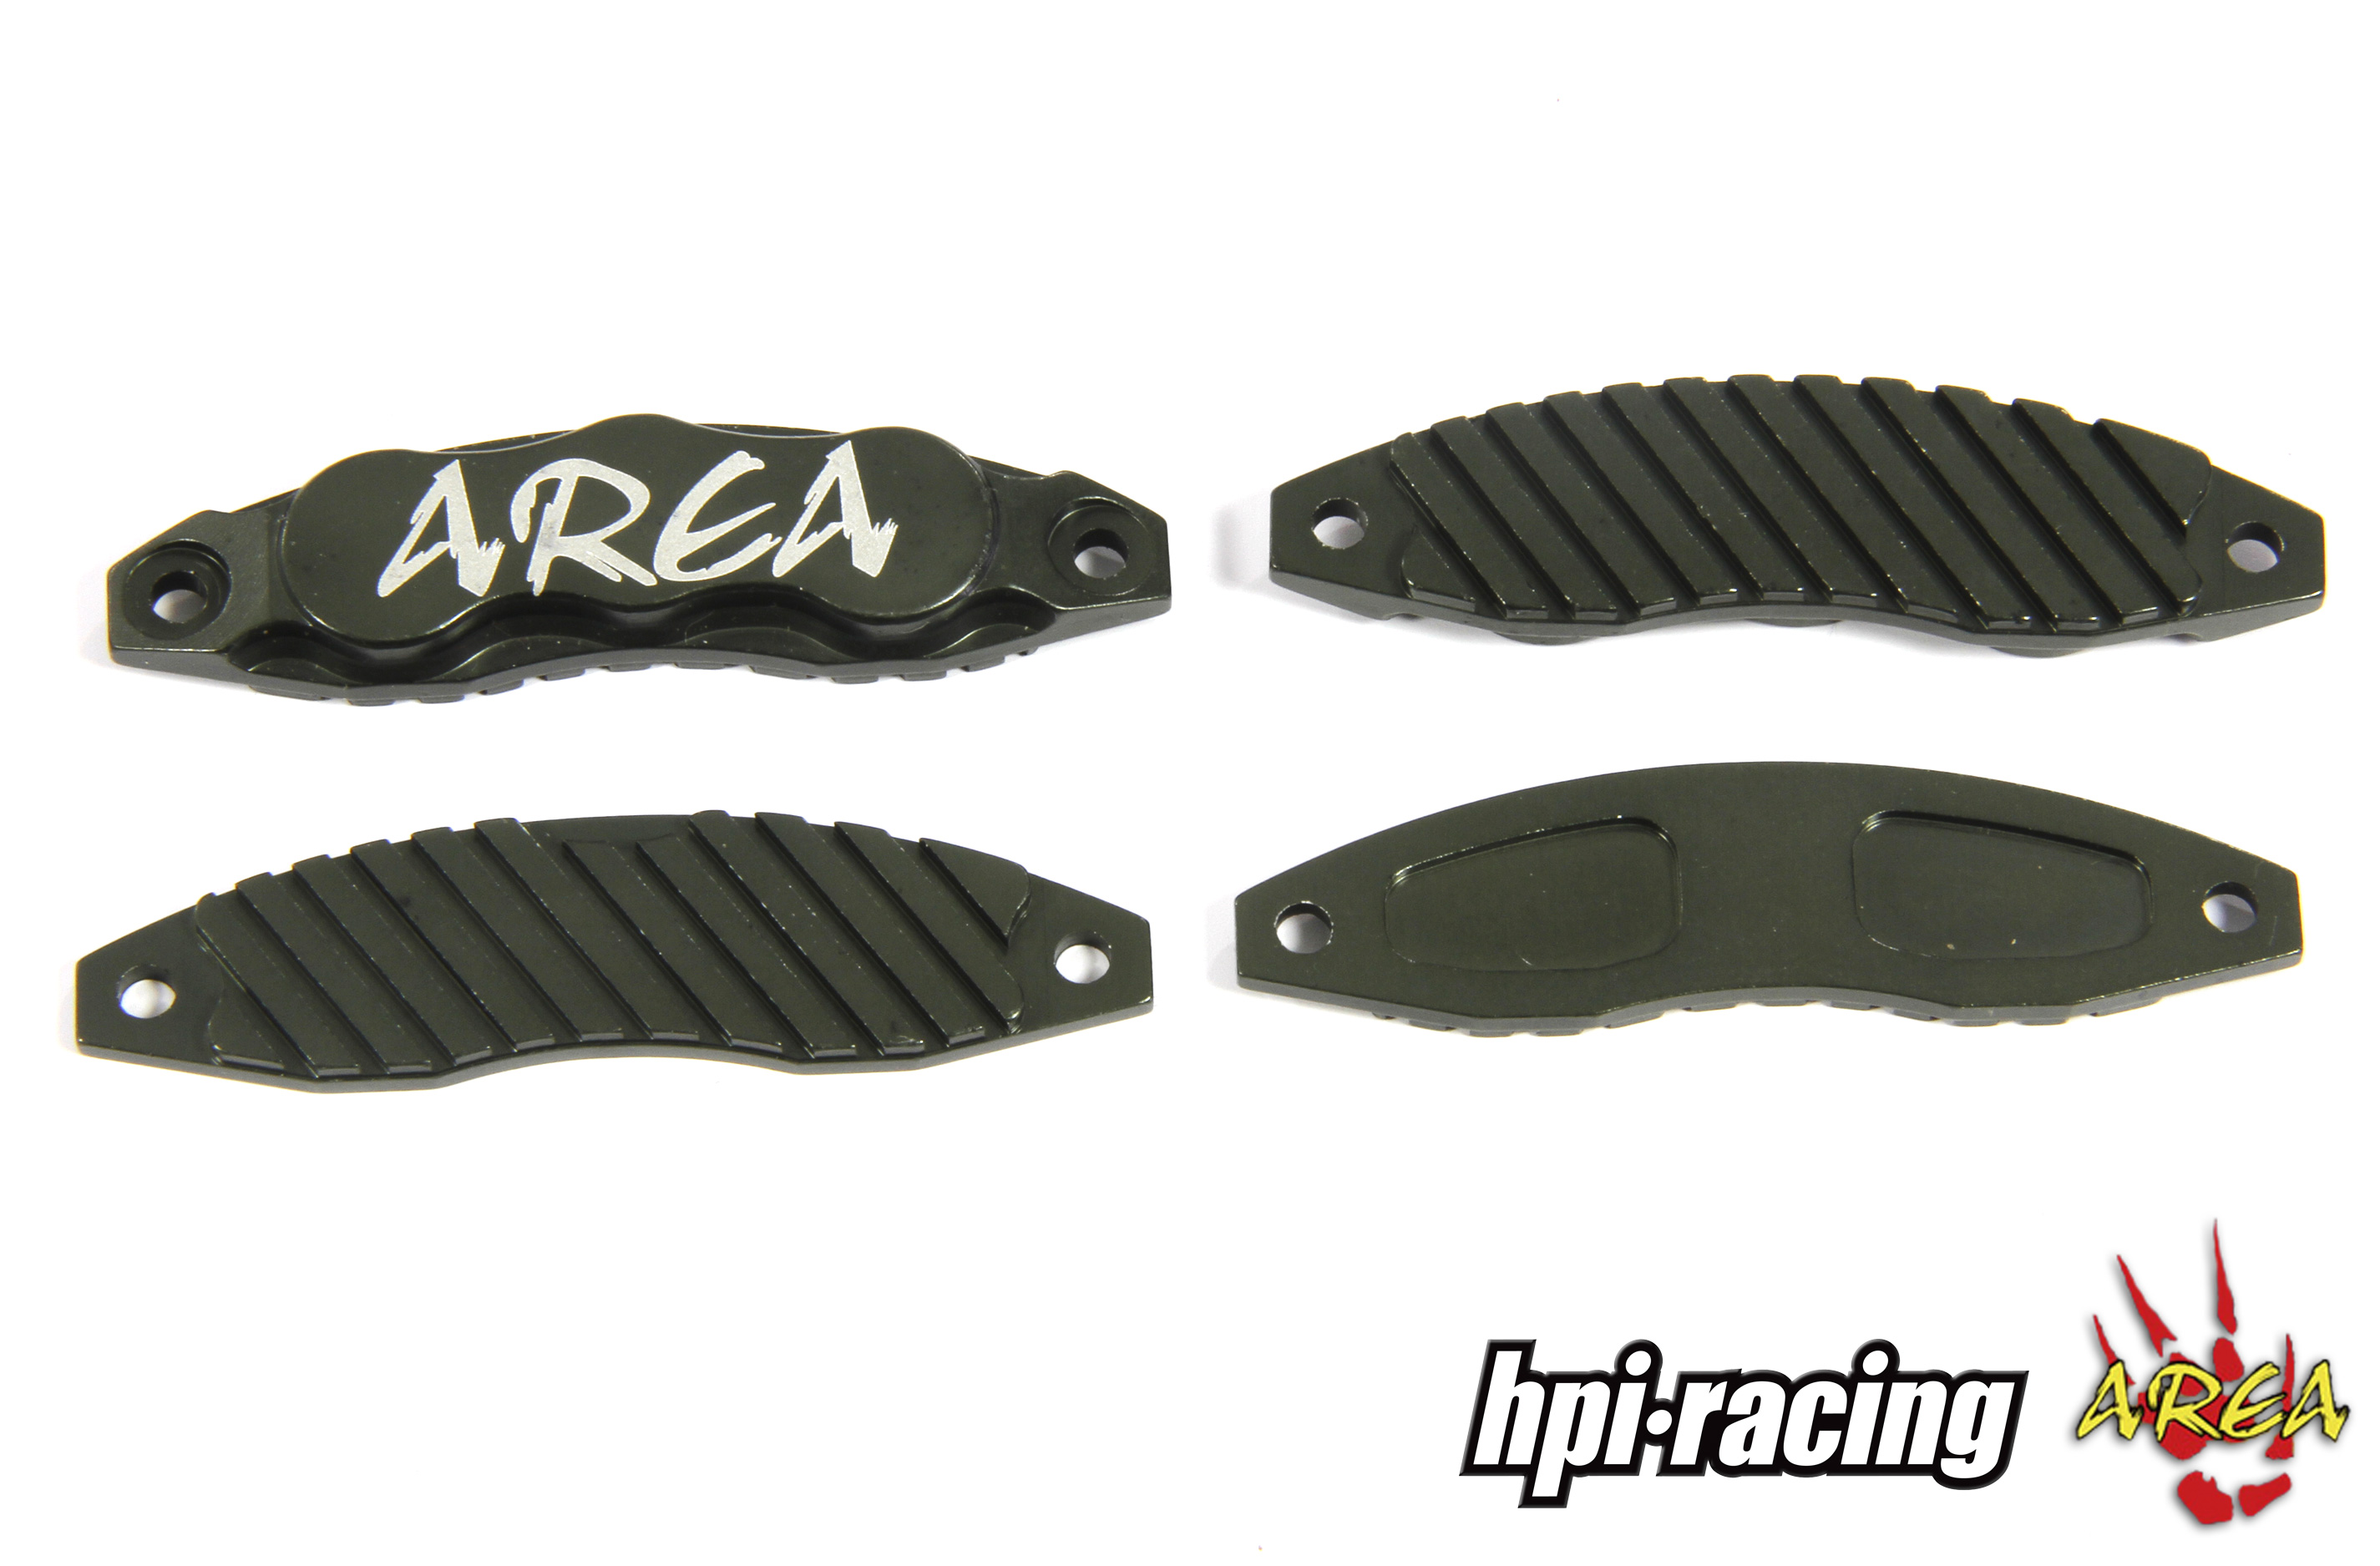 AREA-BJ030 Brake pads for HPI front brake